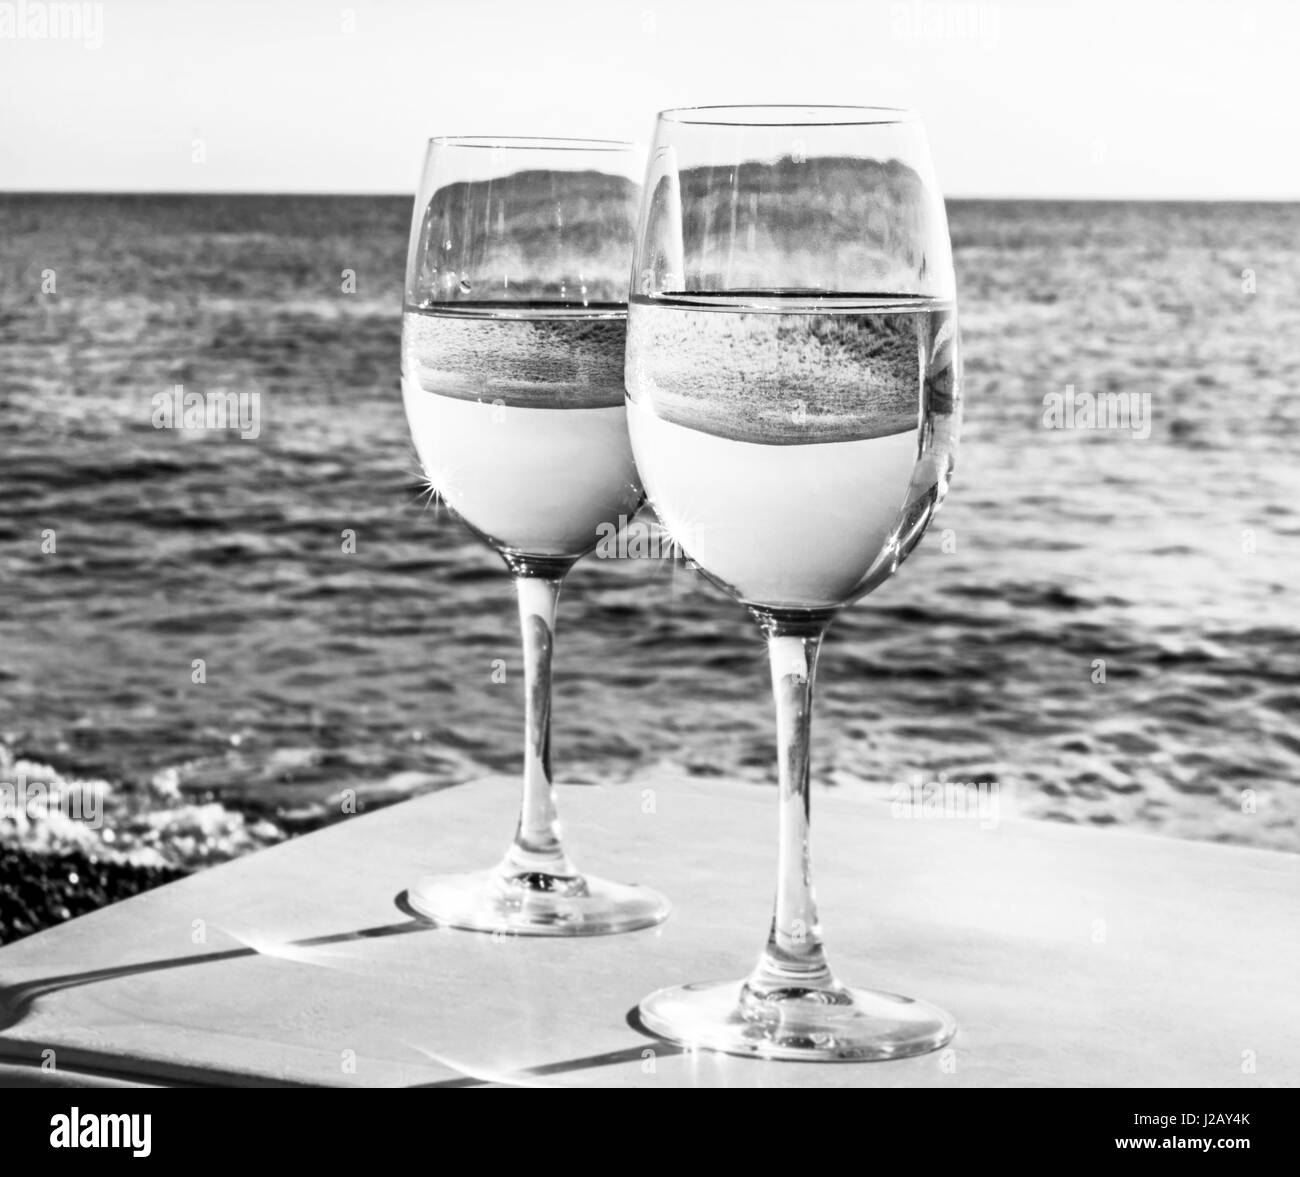 Zwei Gläser Wein am Strand in der Nähe von Ocean am Tag in schwarz / weiß Stockfoto